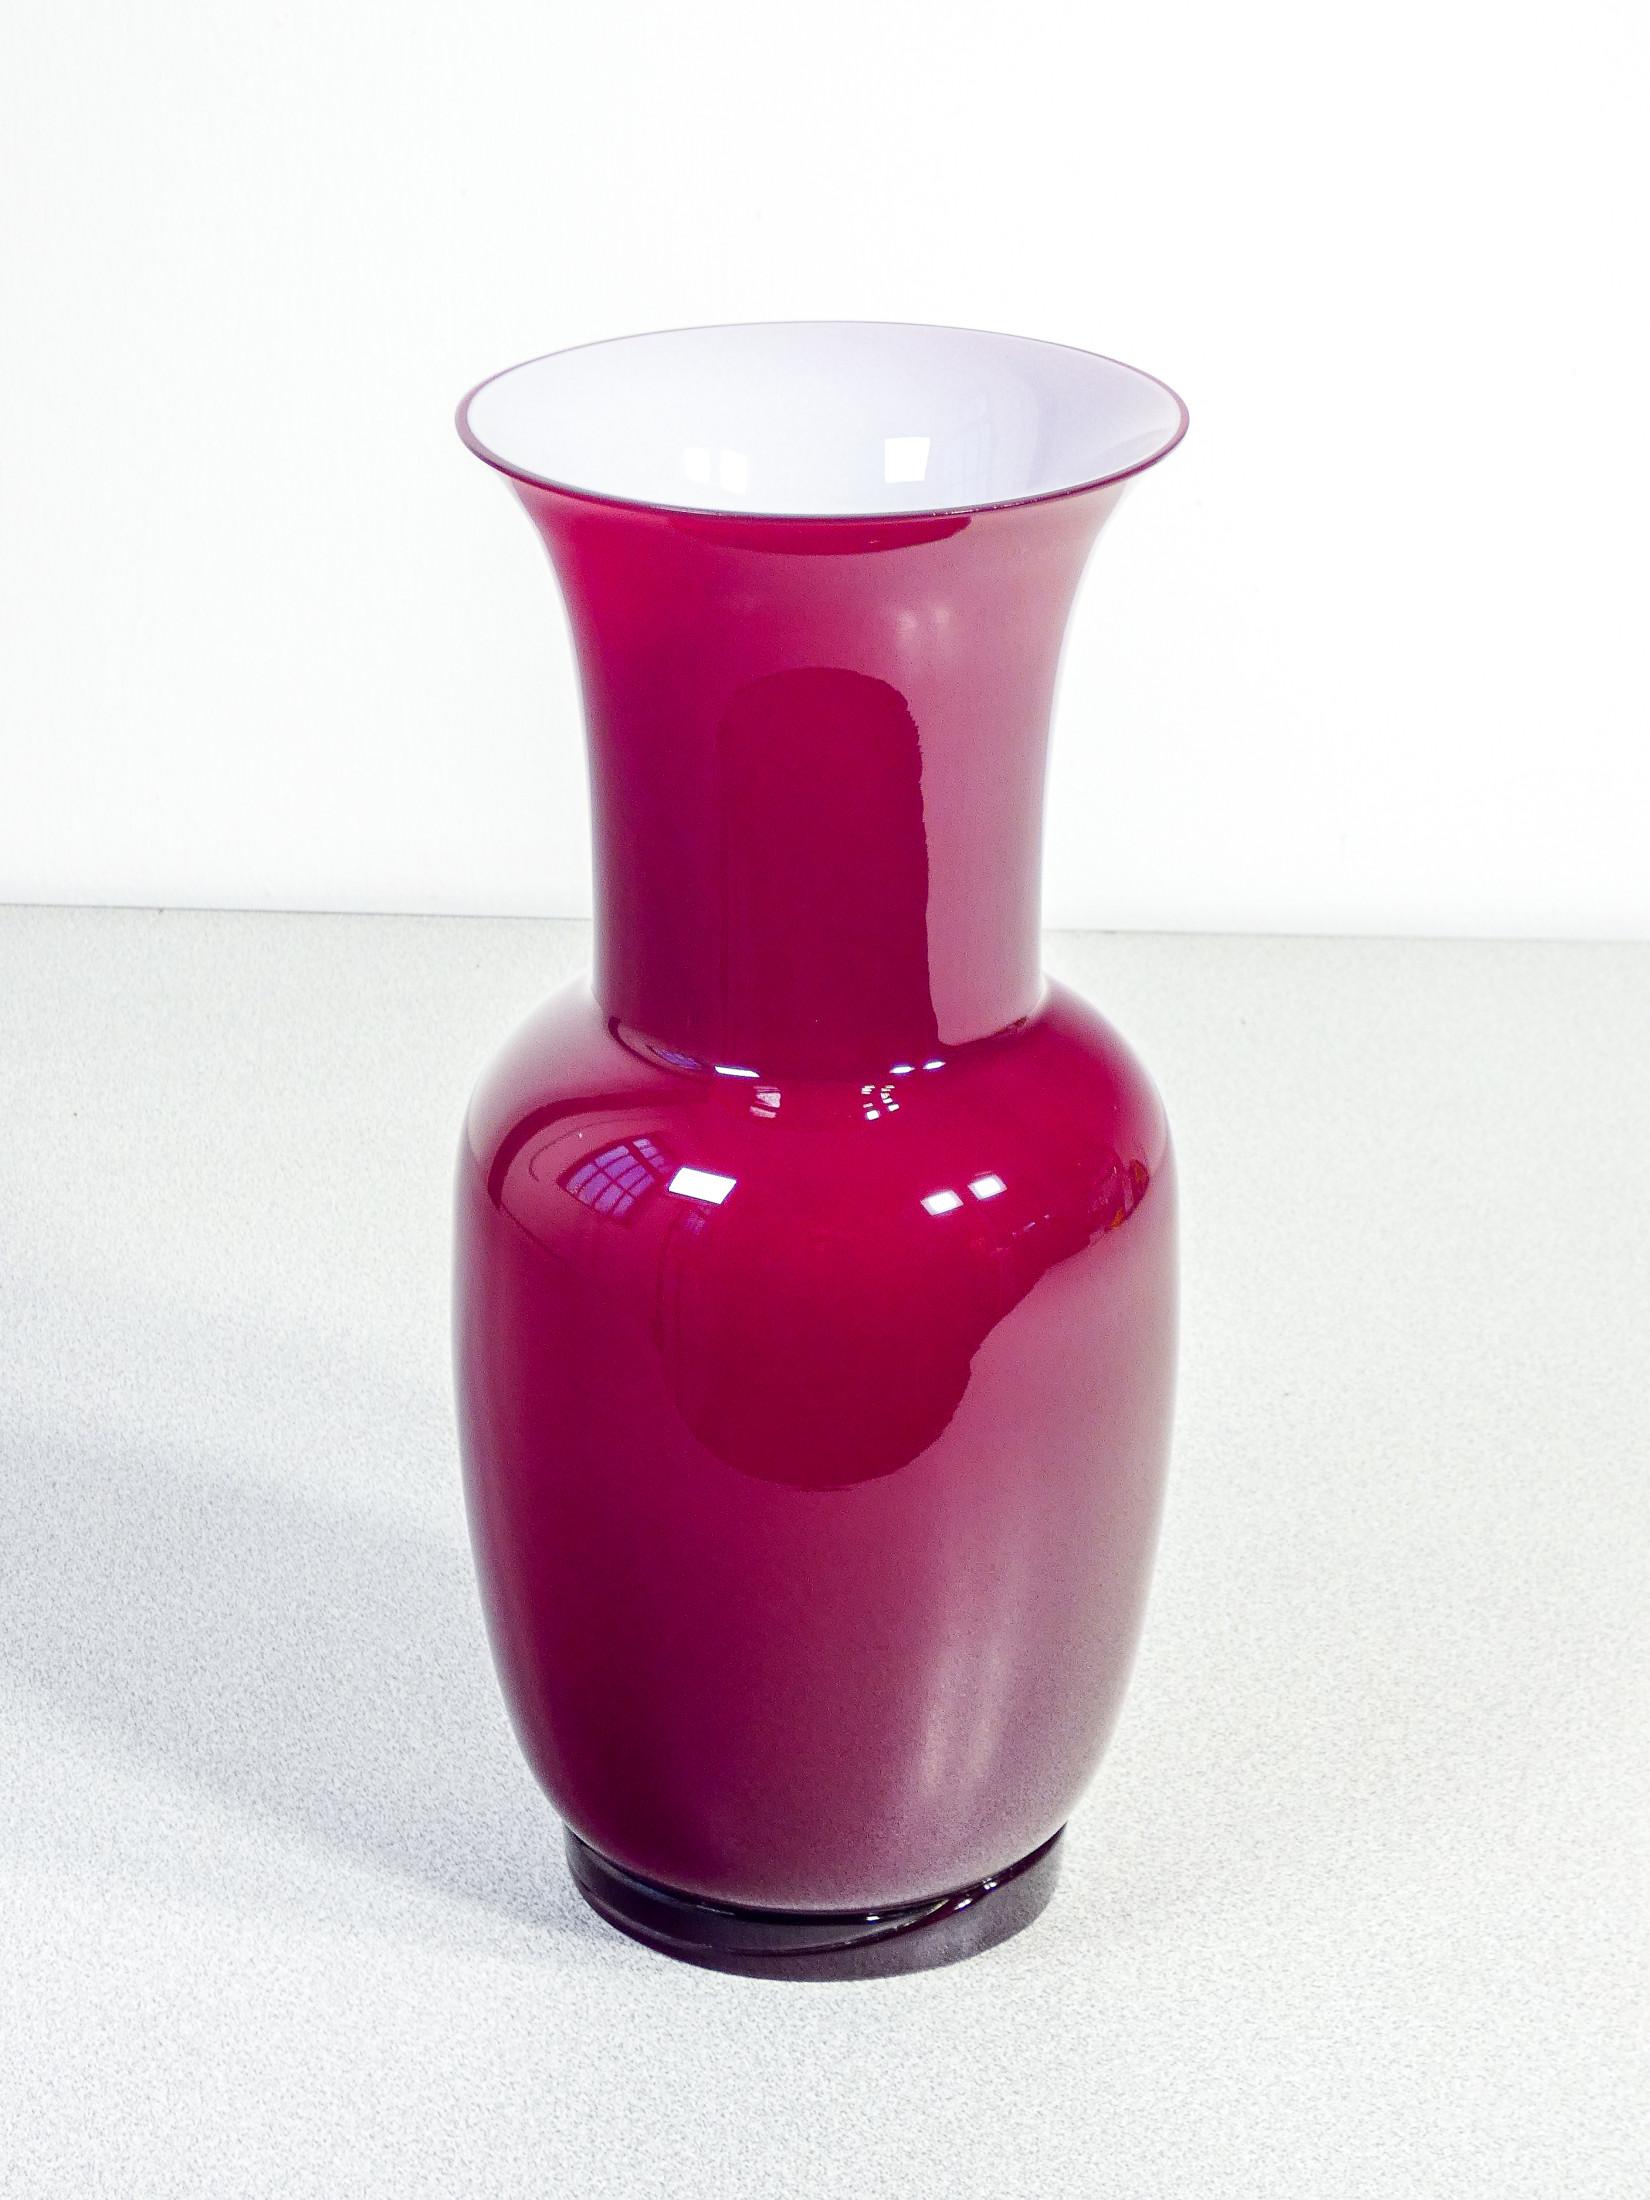 Italian Vase Opalino Signed Venini, Original Design by Paolo Venini, Red Version